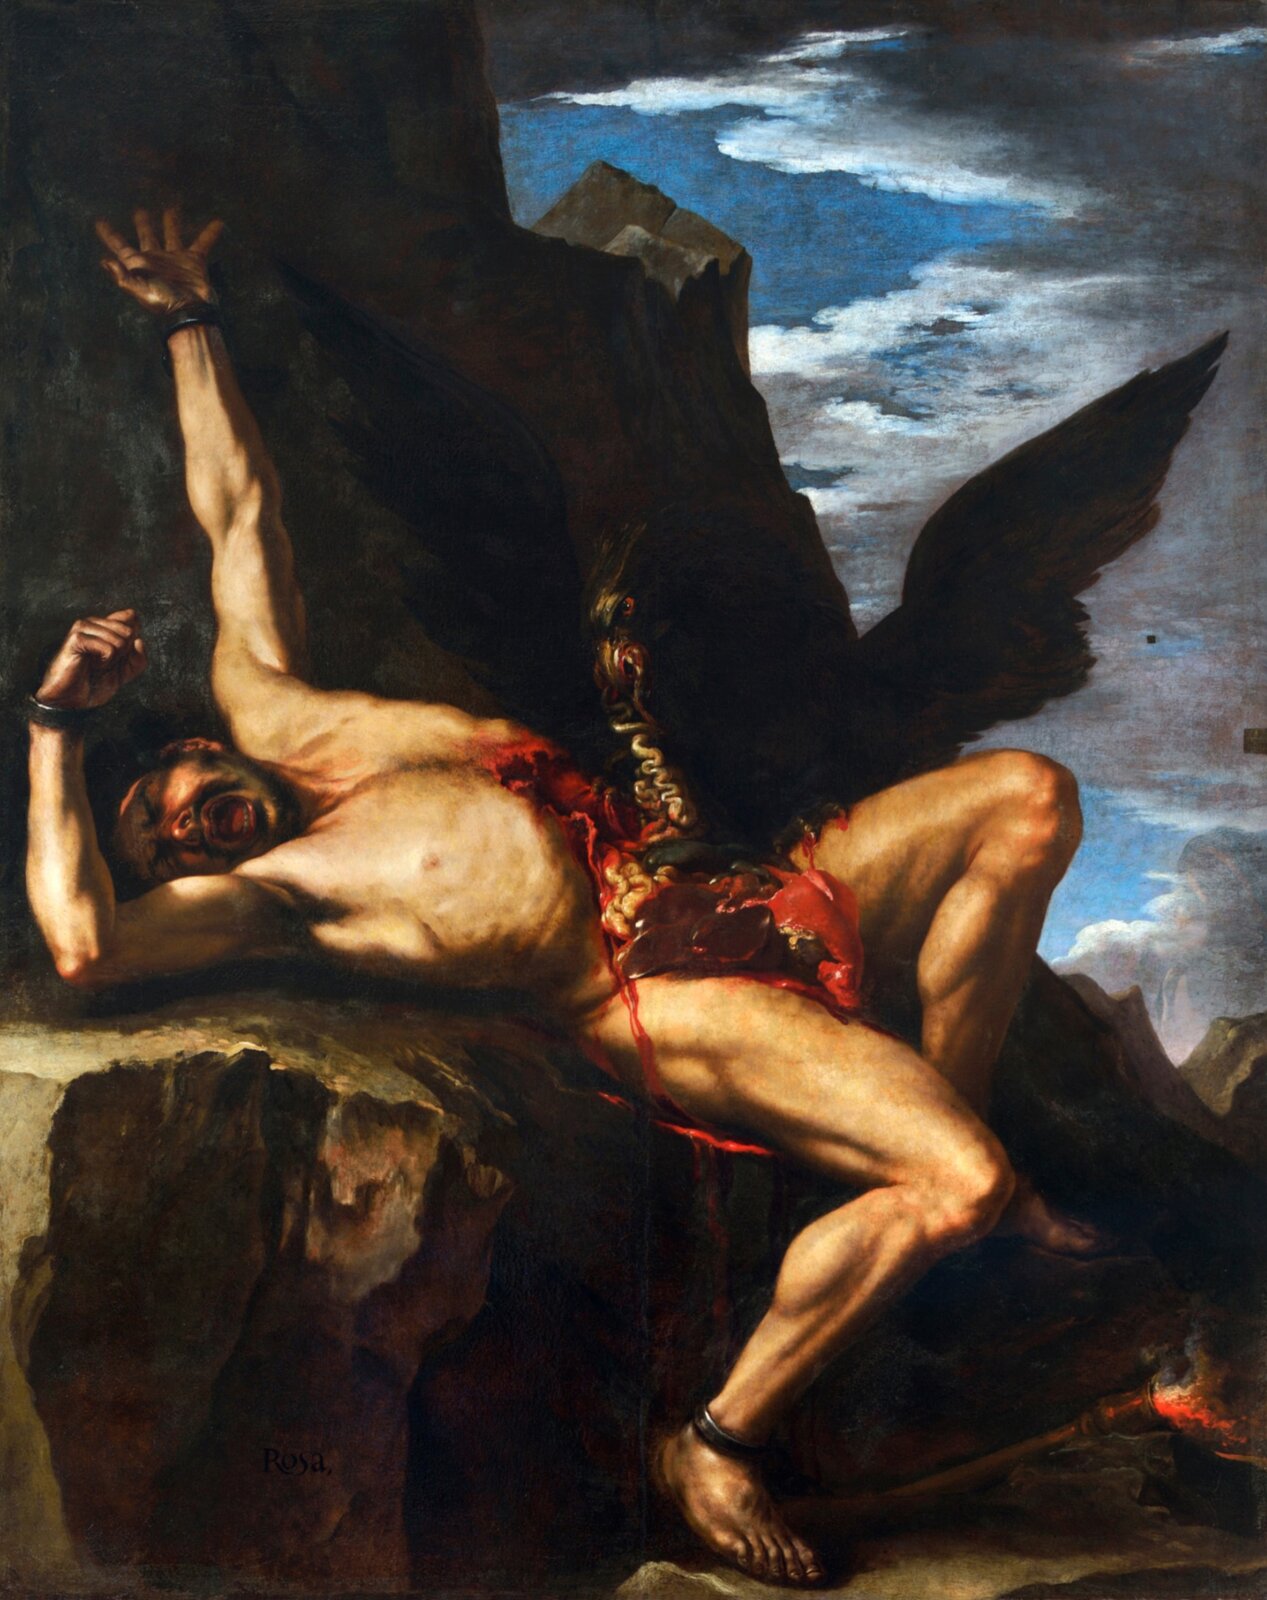 Obraz autorstwa Salvatora Rosy pod tytułem „Tortura Prometeusza”, na którym znajduje się przykuty do skał Prometeusz rozszarpywany przez czarnego orła, który wydziobuje jego wnętrzności. Twarz Tytana pokazuje ból i rozpacz. 